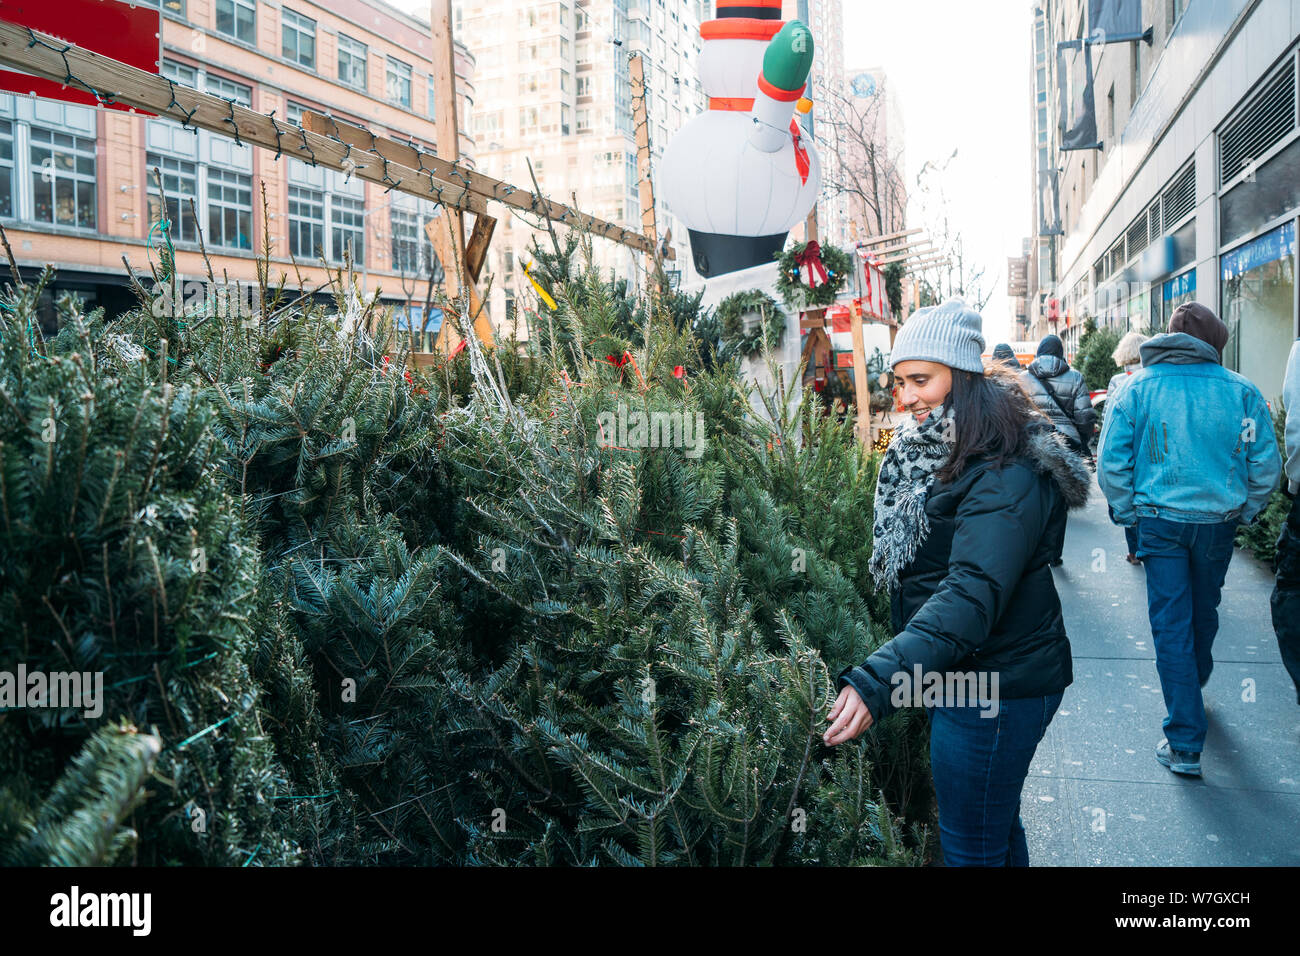 Una bella donna vestita di un cappotto osservando piccoli alberi di pino in strada - Natale a New York - foto colorate Foto Stock